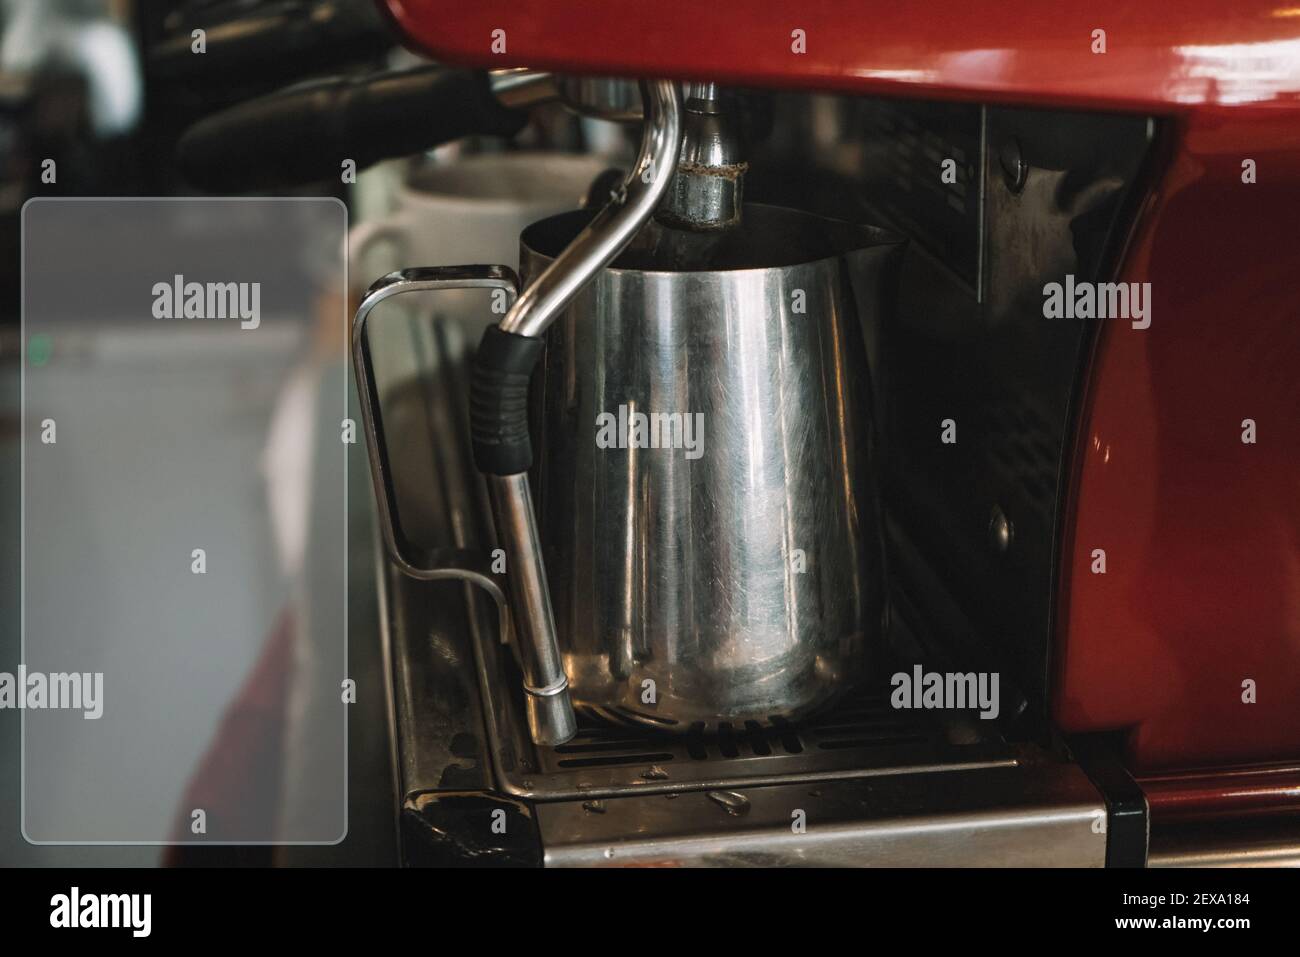 https://c8.alamy.com/compes/2exa184/maquina-de-cafe-antigua-con-una-taza-de-plancha-se-vierte-el-espresso-en-ella-2exa184.jpg